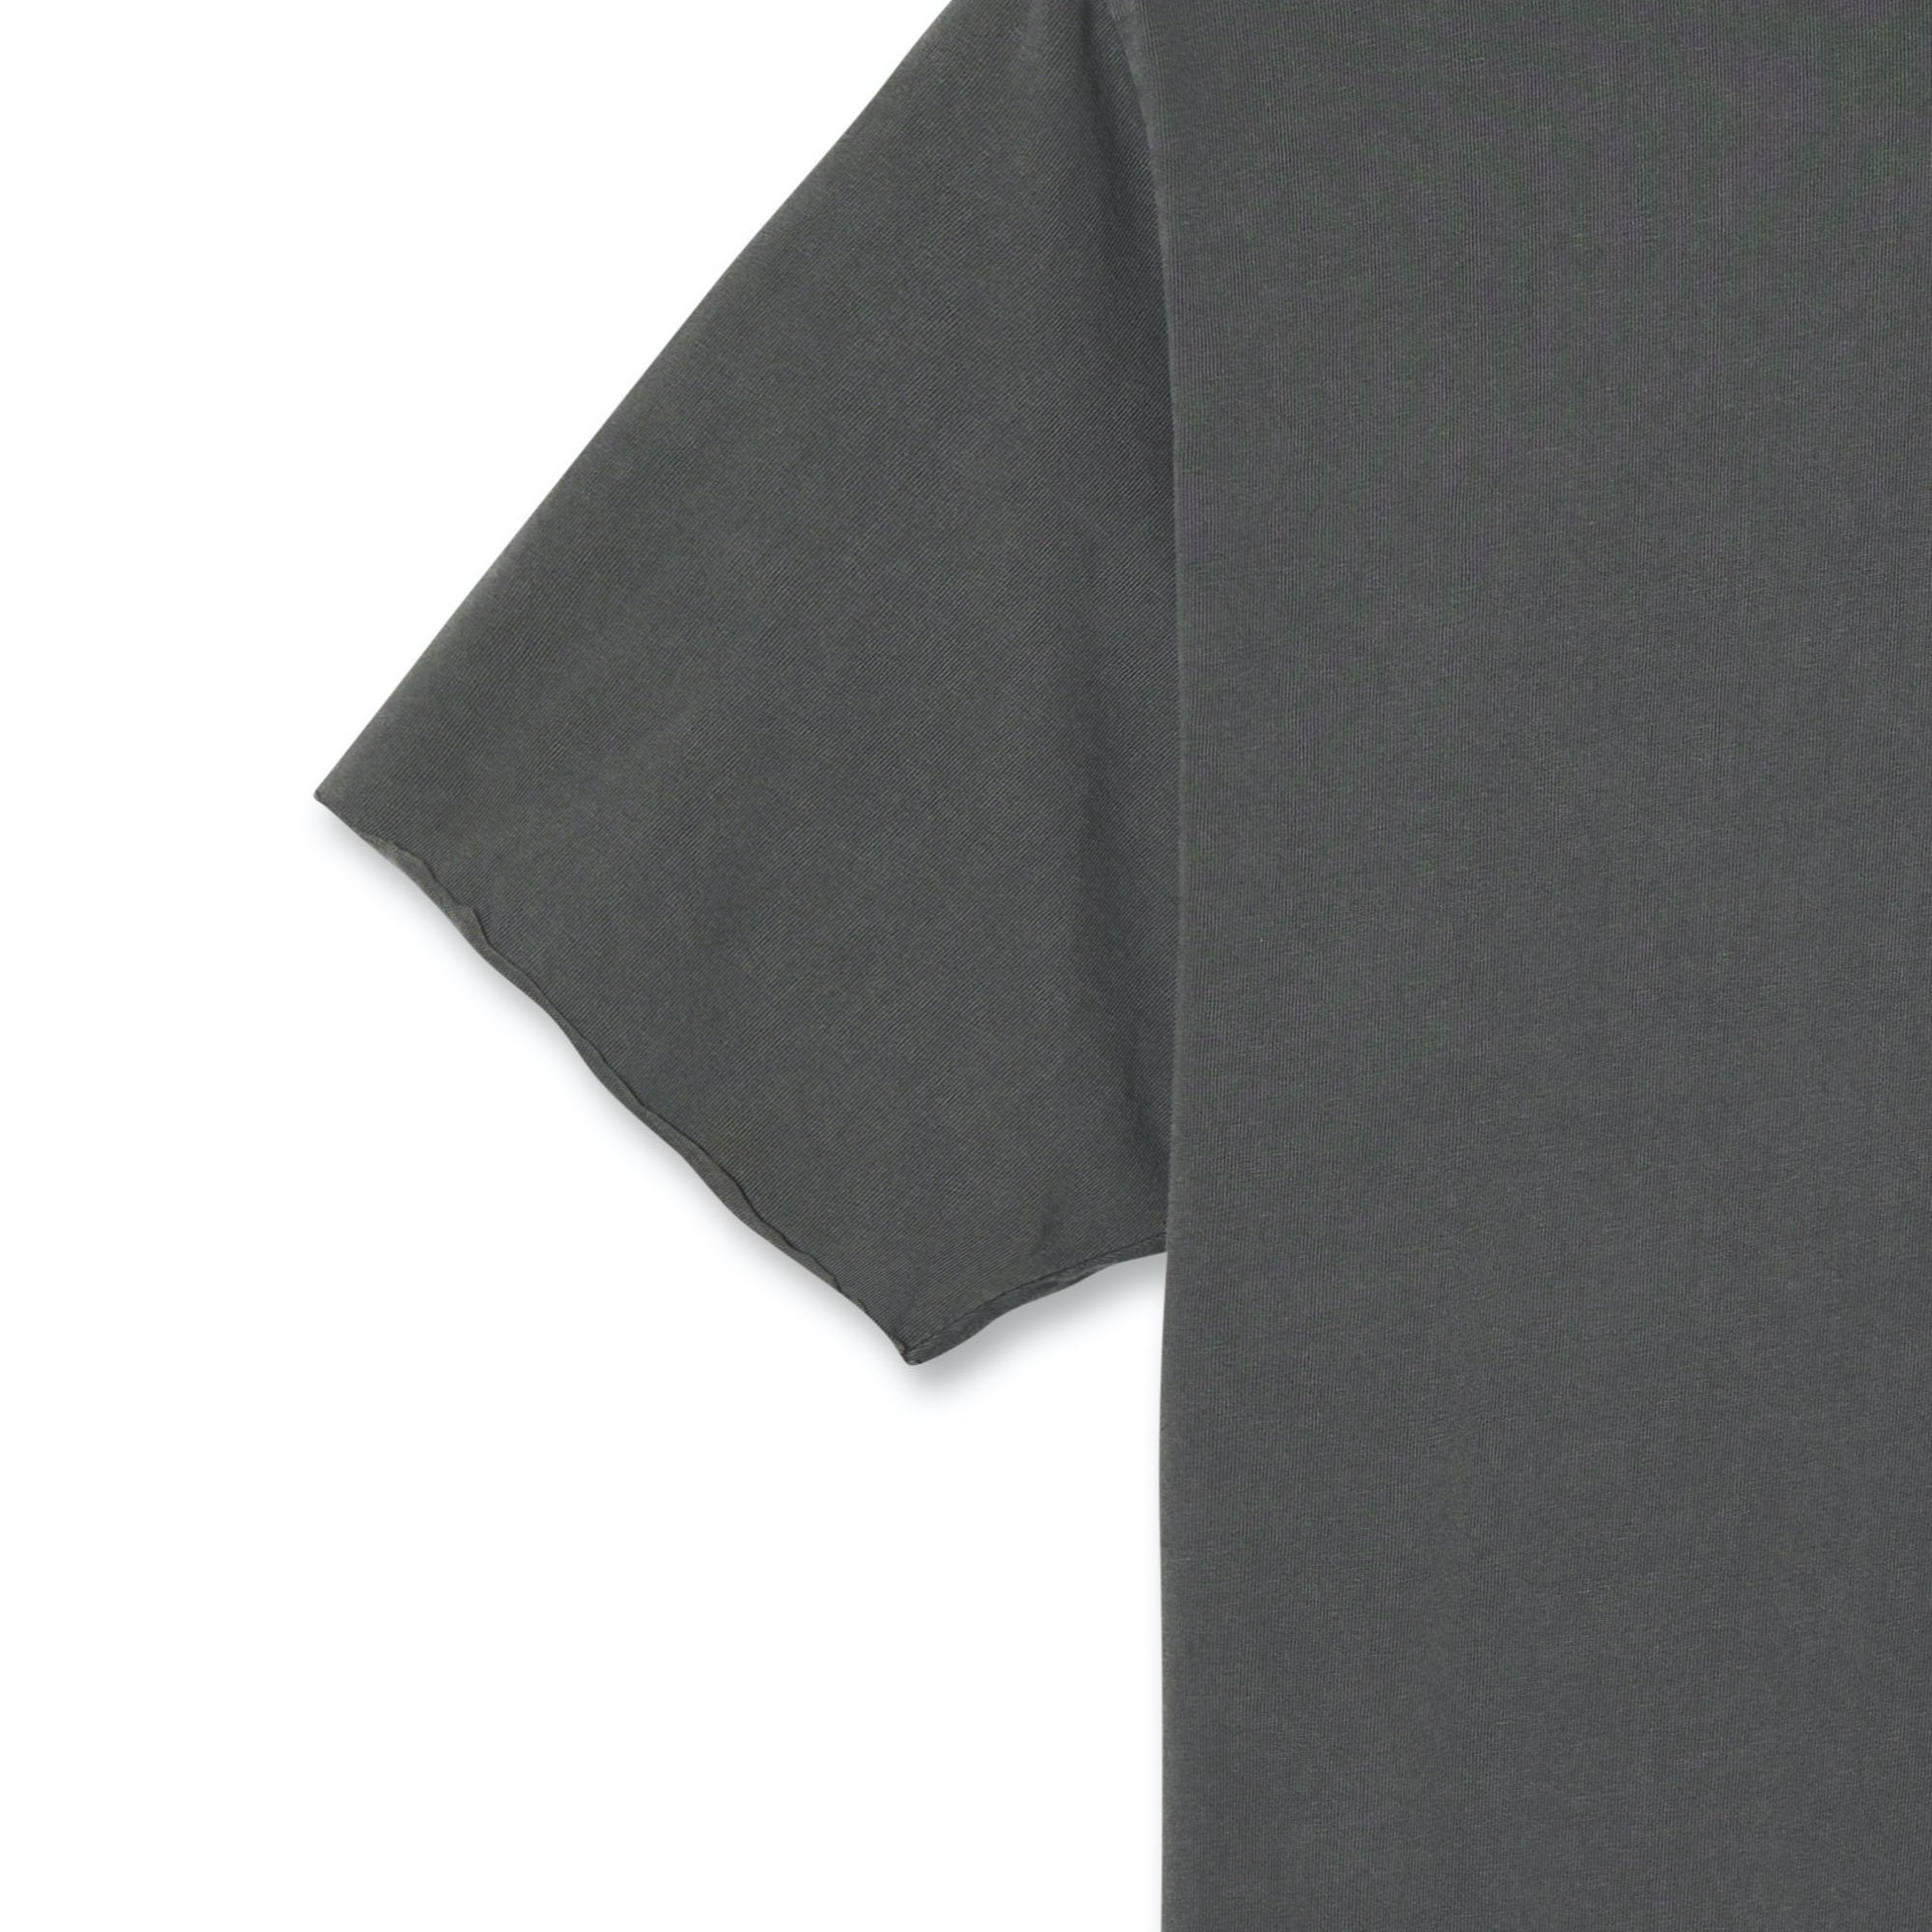 Comfy Sensational Regular Fit Half Sleeve Shirt For Men, L-40 / Black